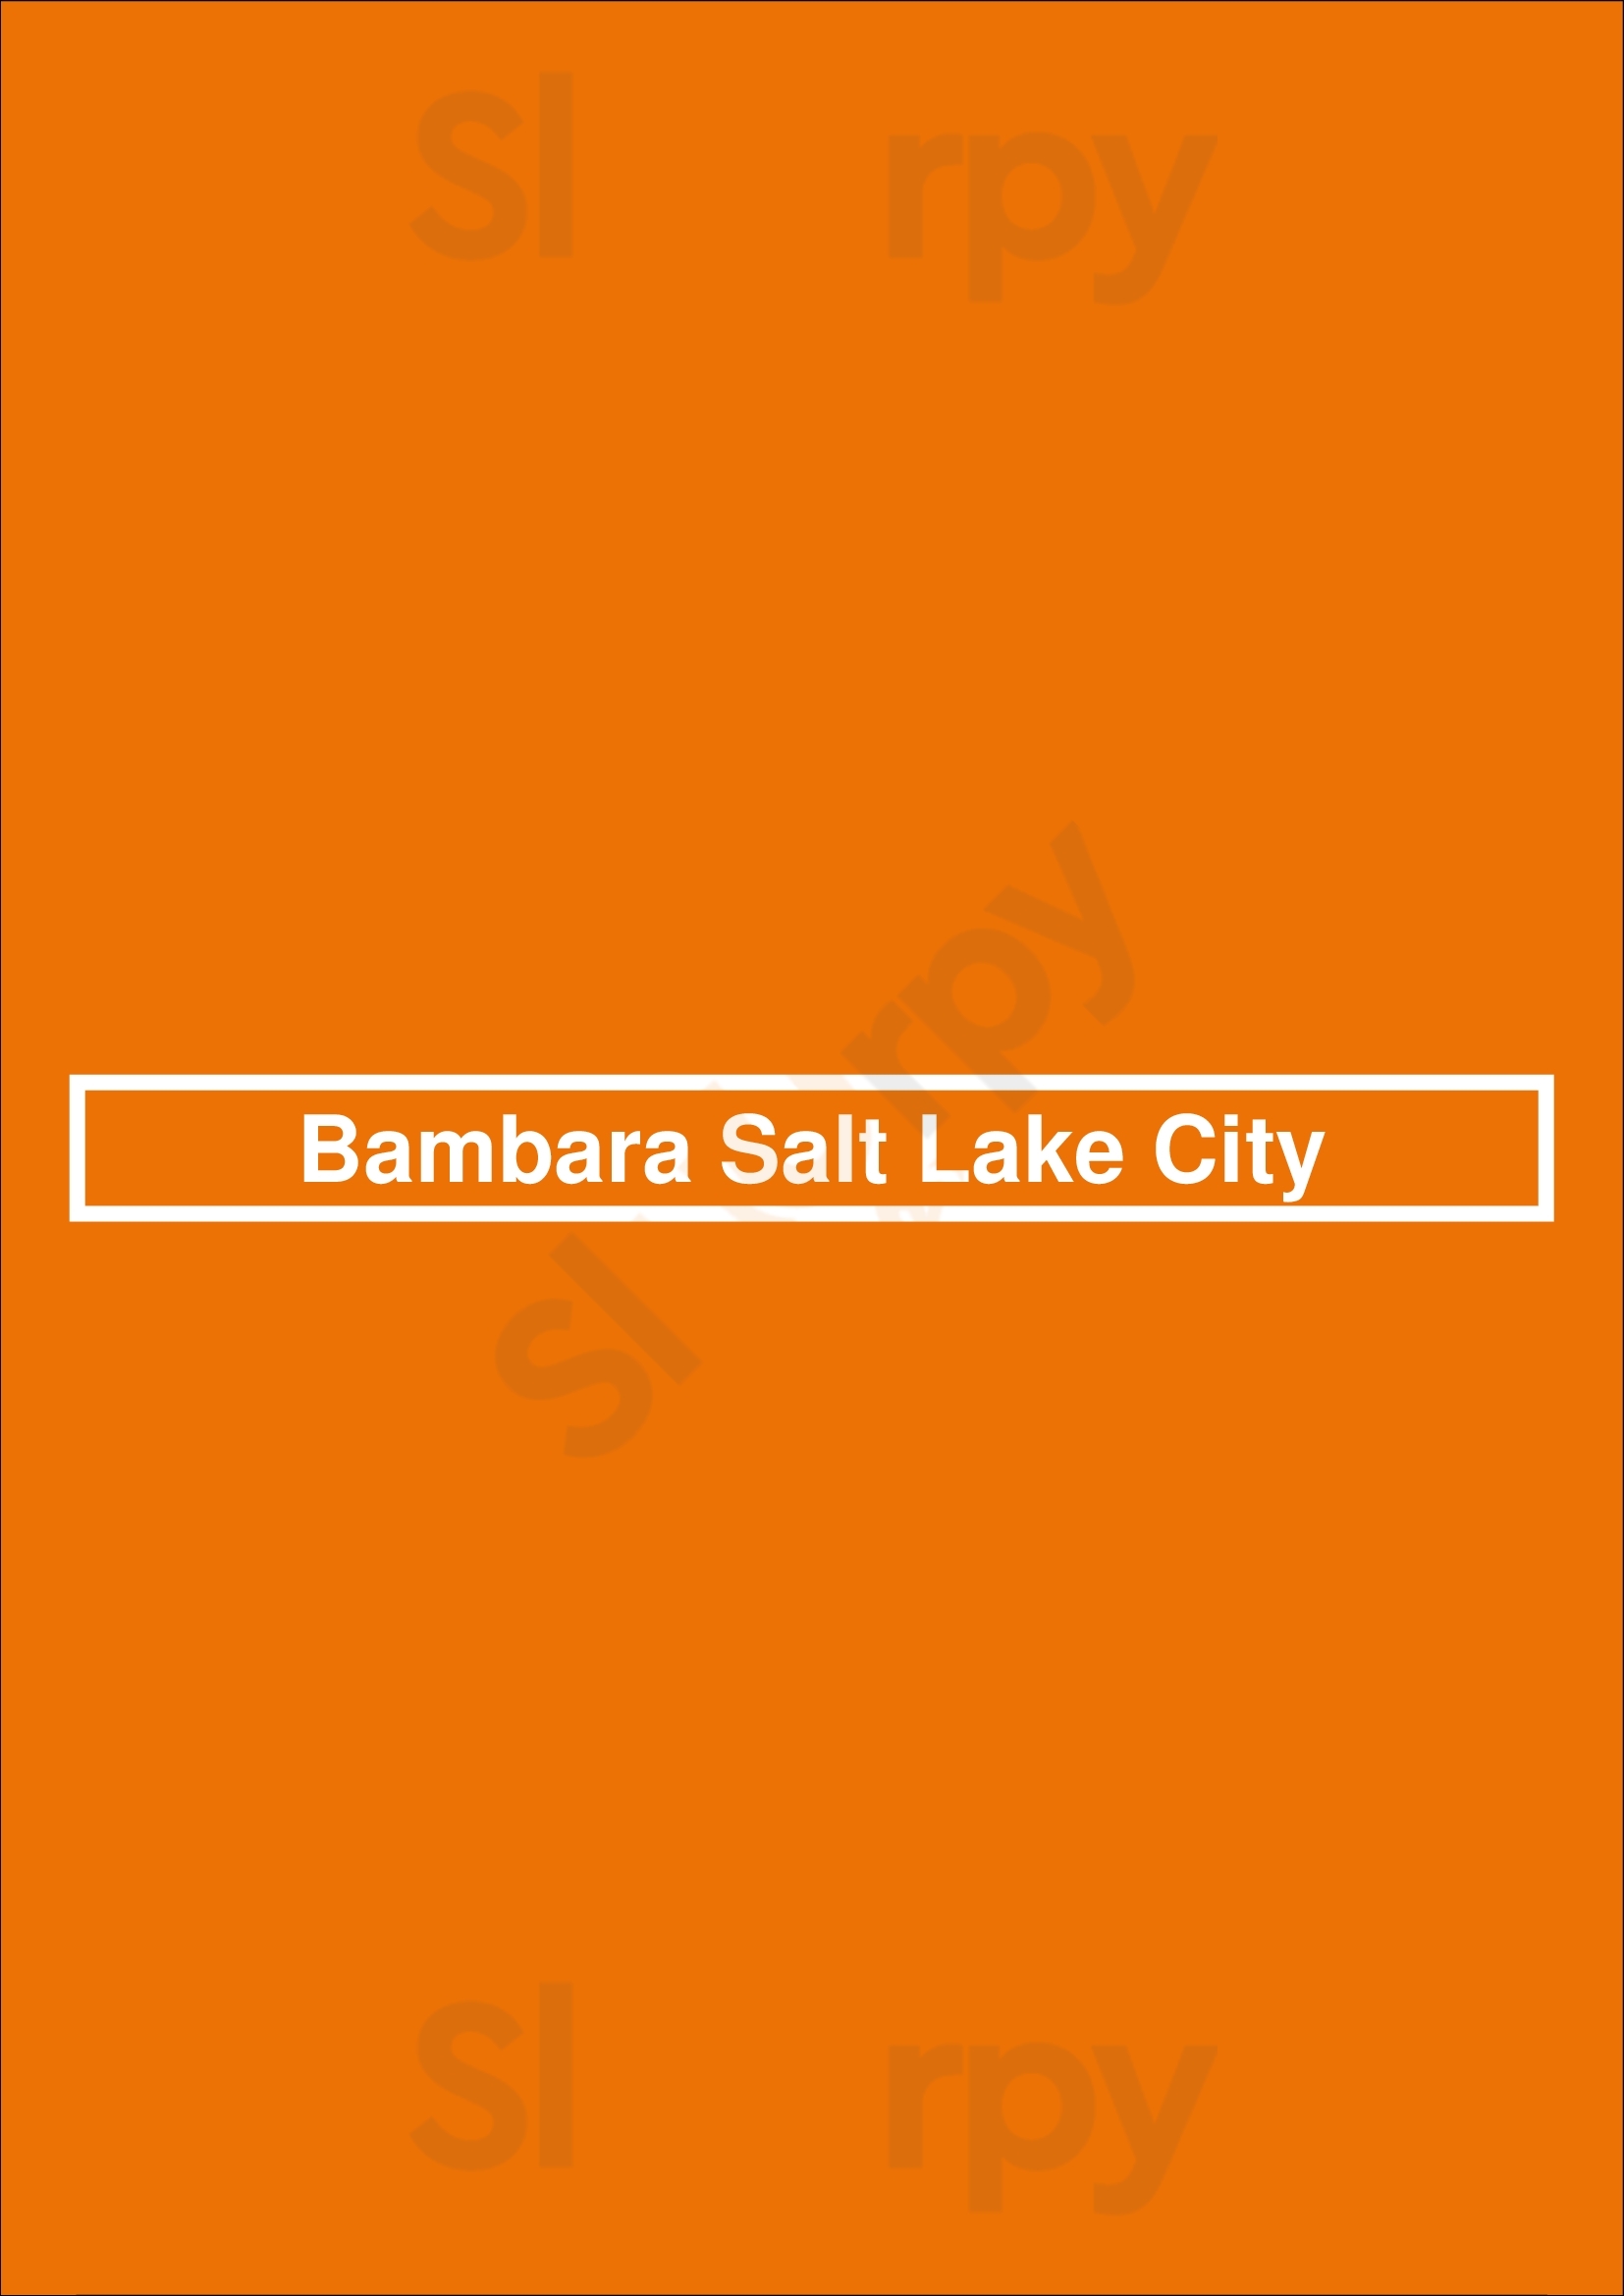 Bambara Salt Lake City Salt Lake City Menu - 1